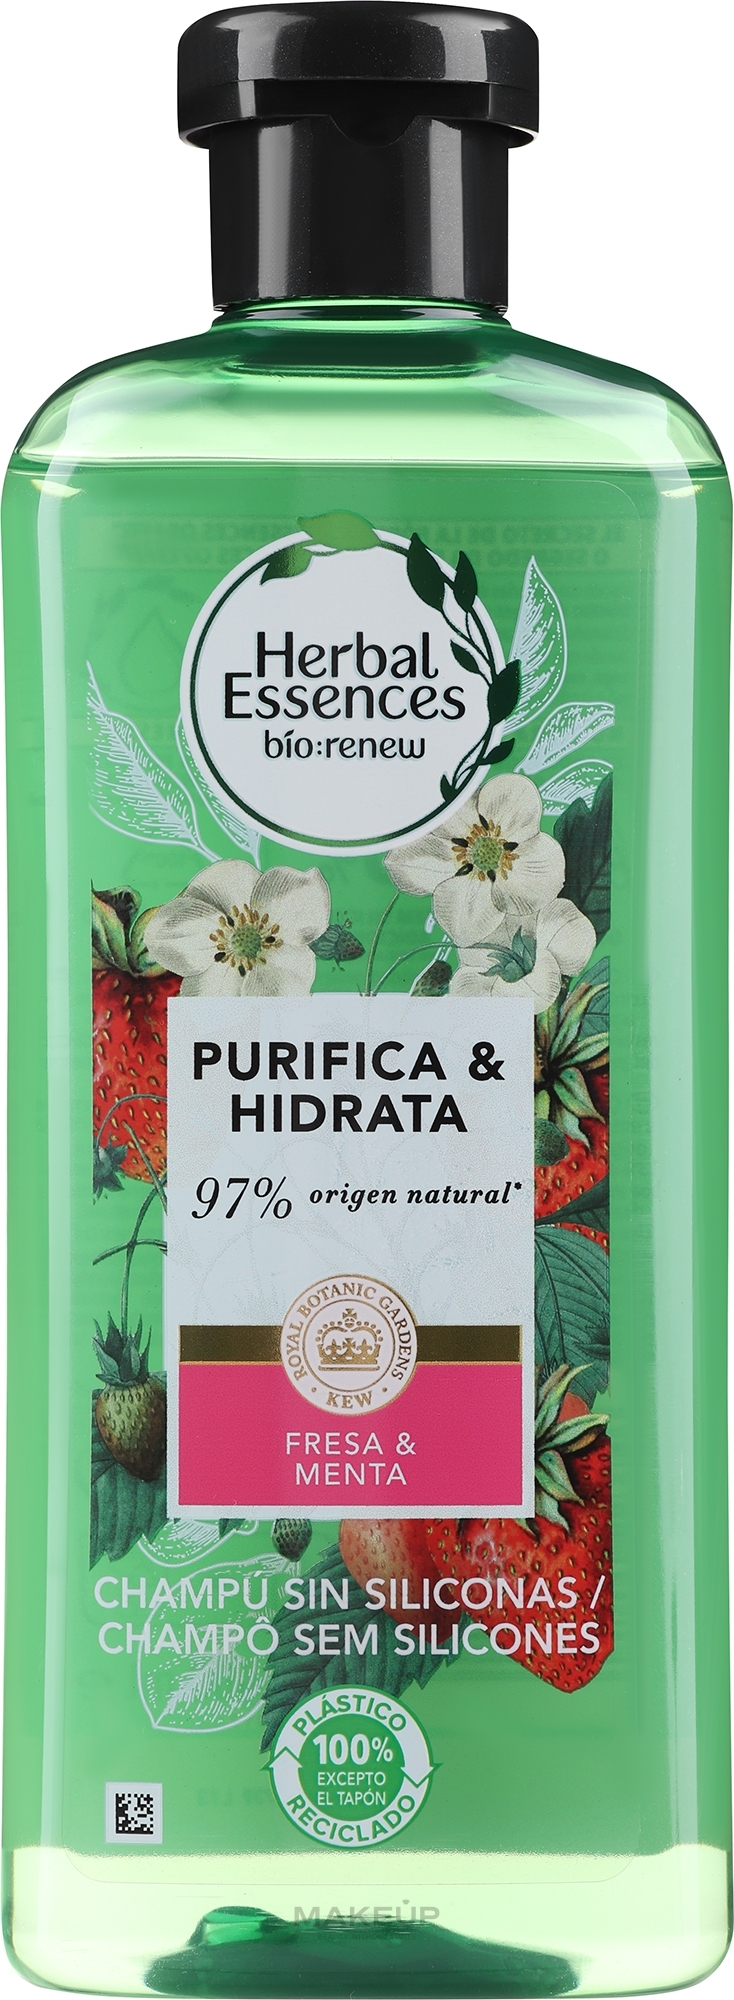 herbal essences szampon biała truskawka